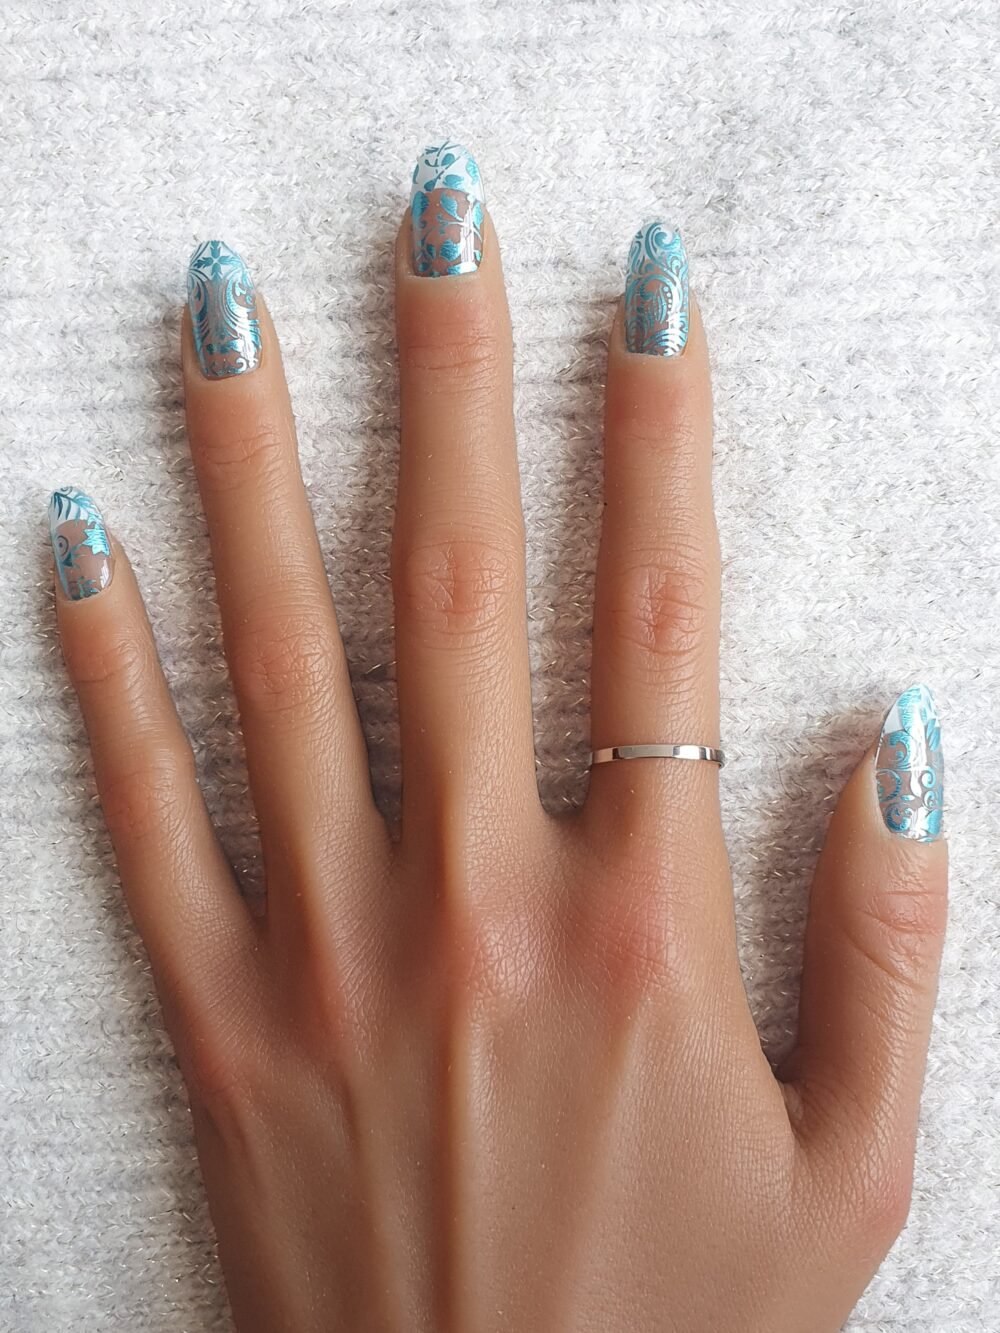 Manucure aux motifs floraux et tourbillonnants en nails stickers bleus.